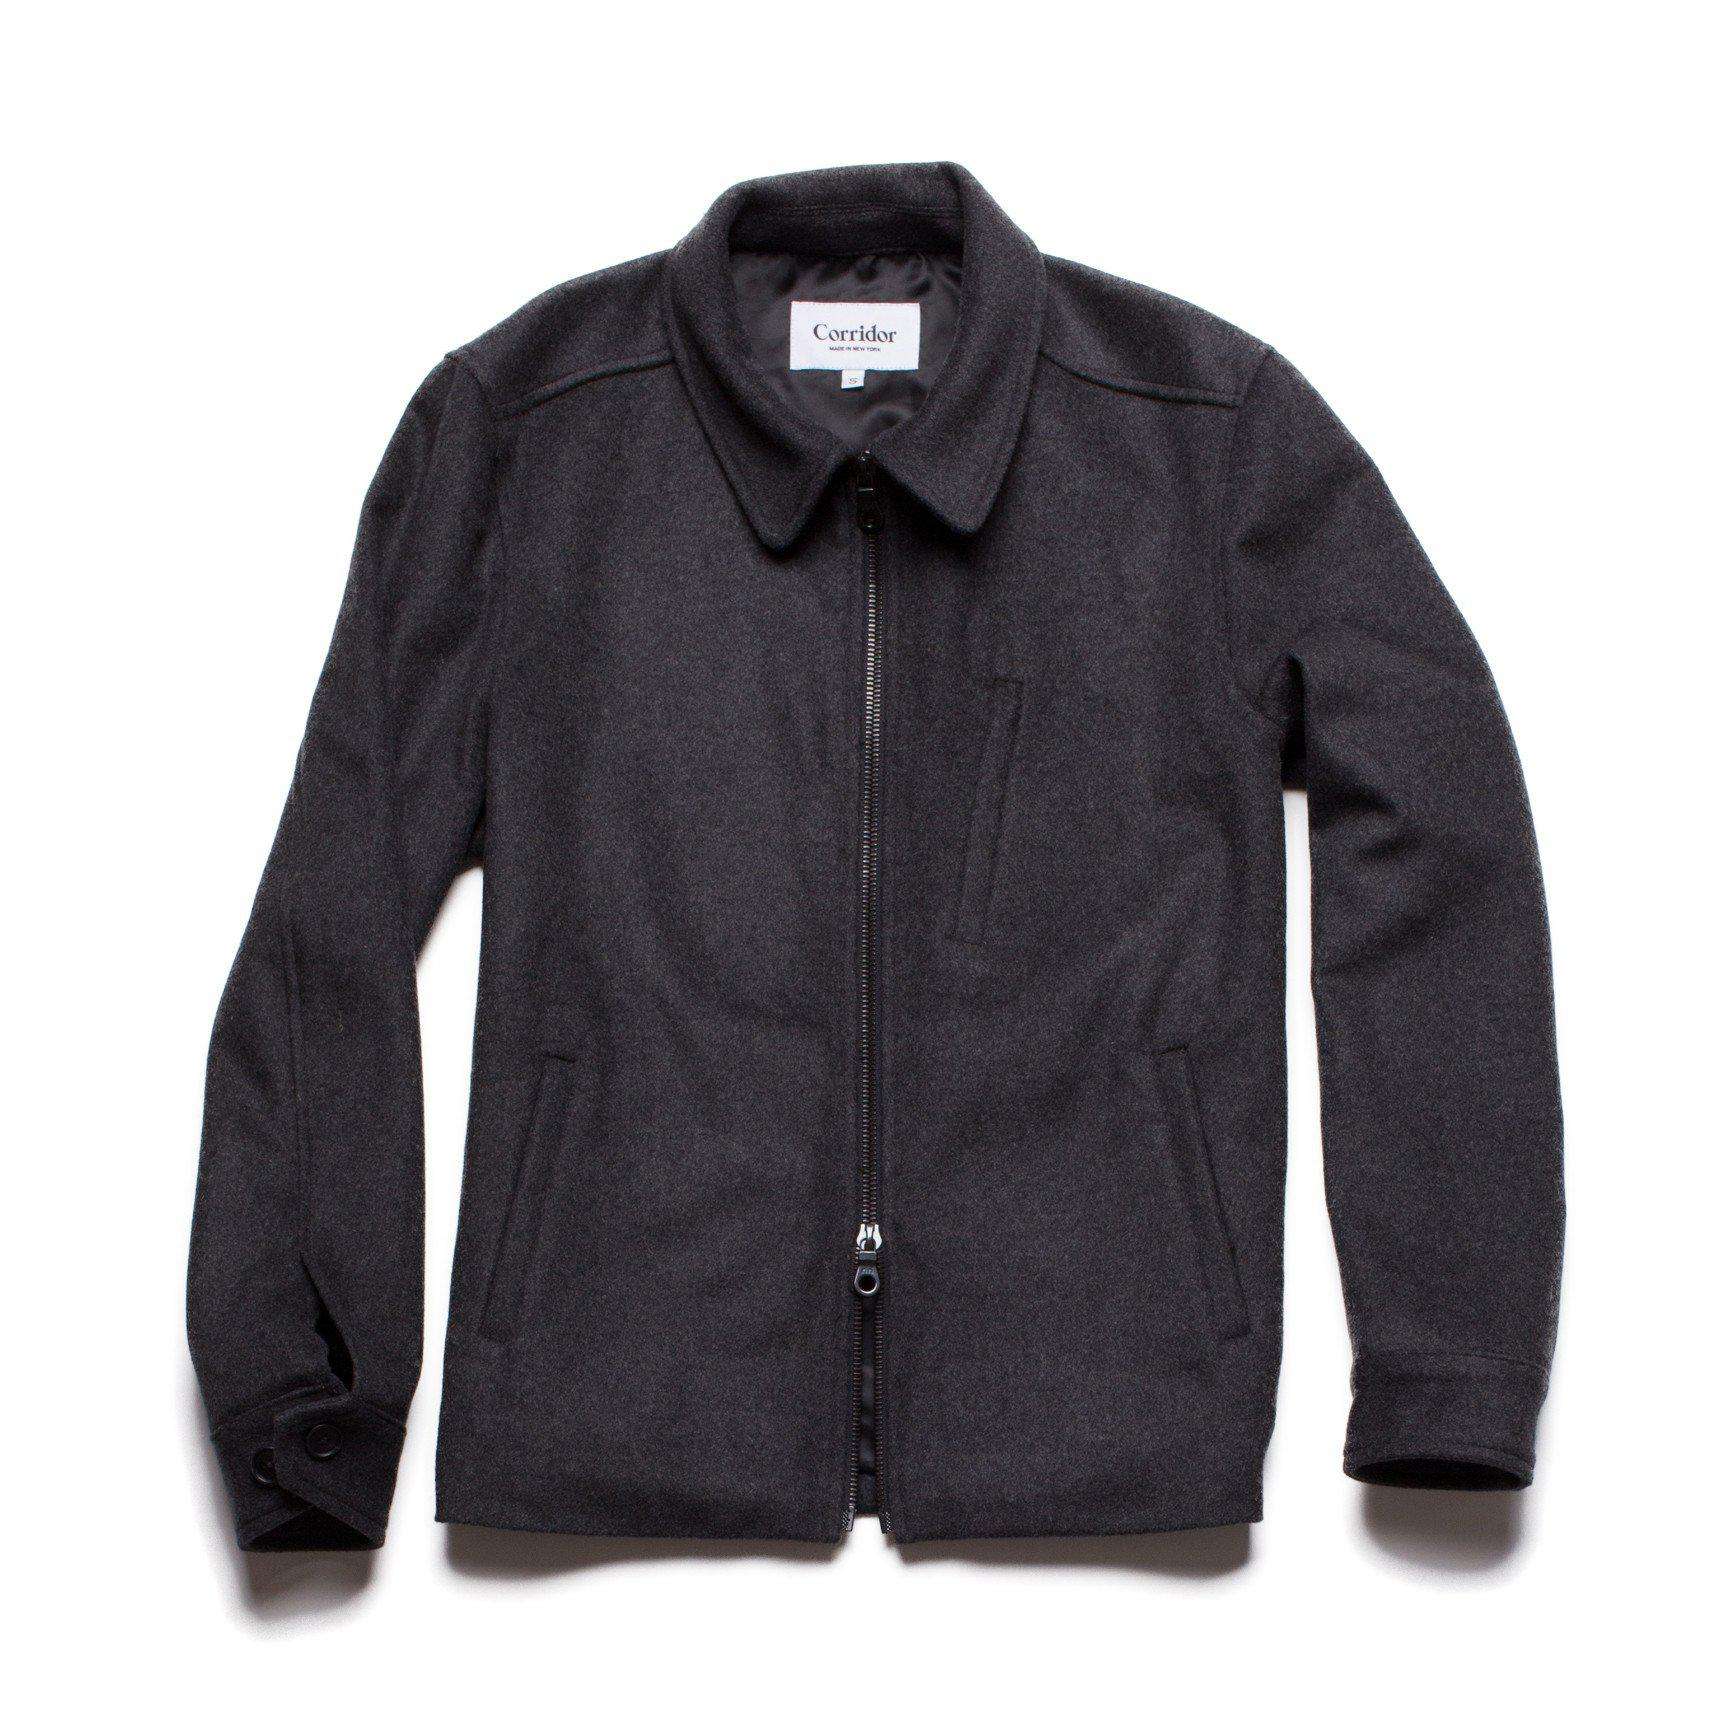 Corridor NYC Wool Zip Jacket in Black for Men - Lyst